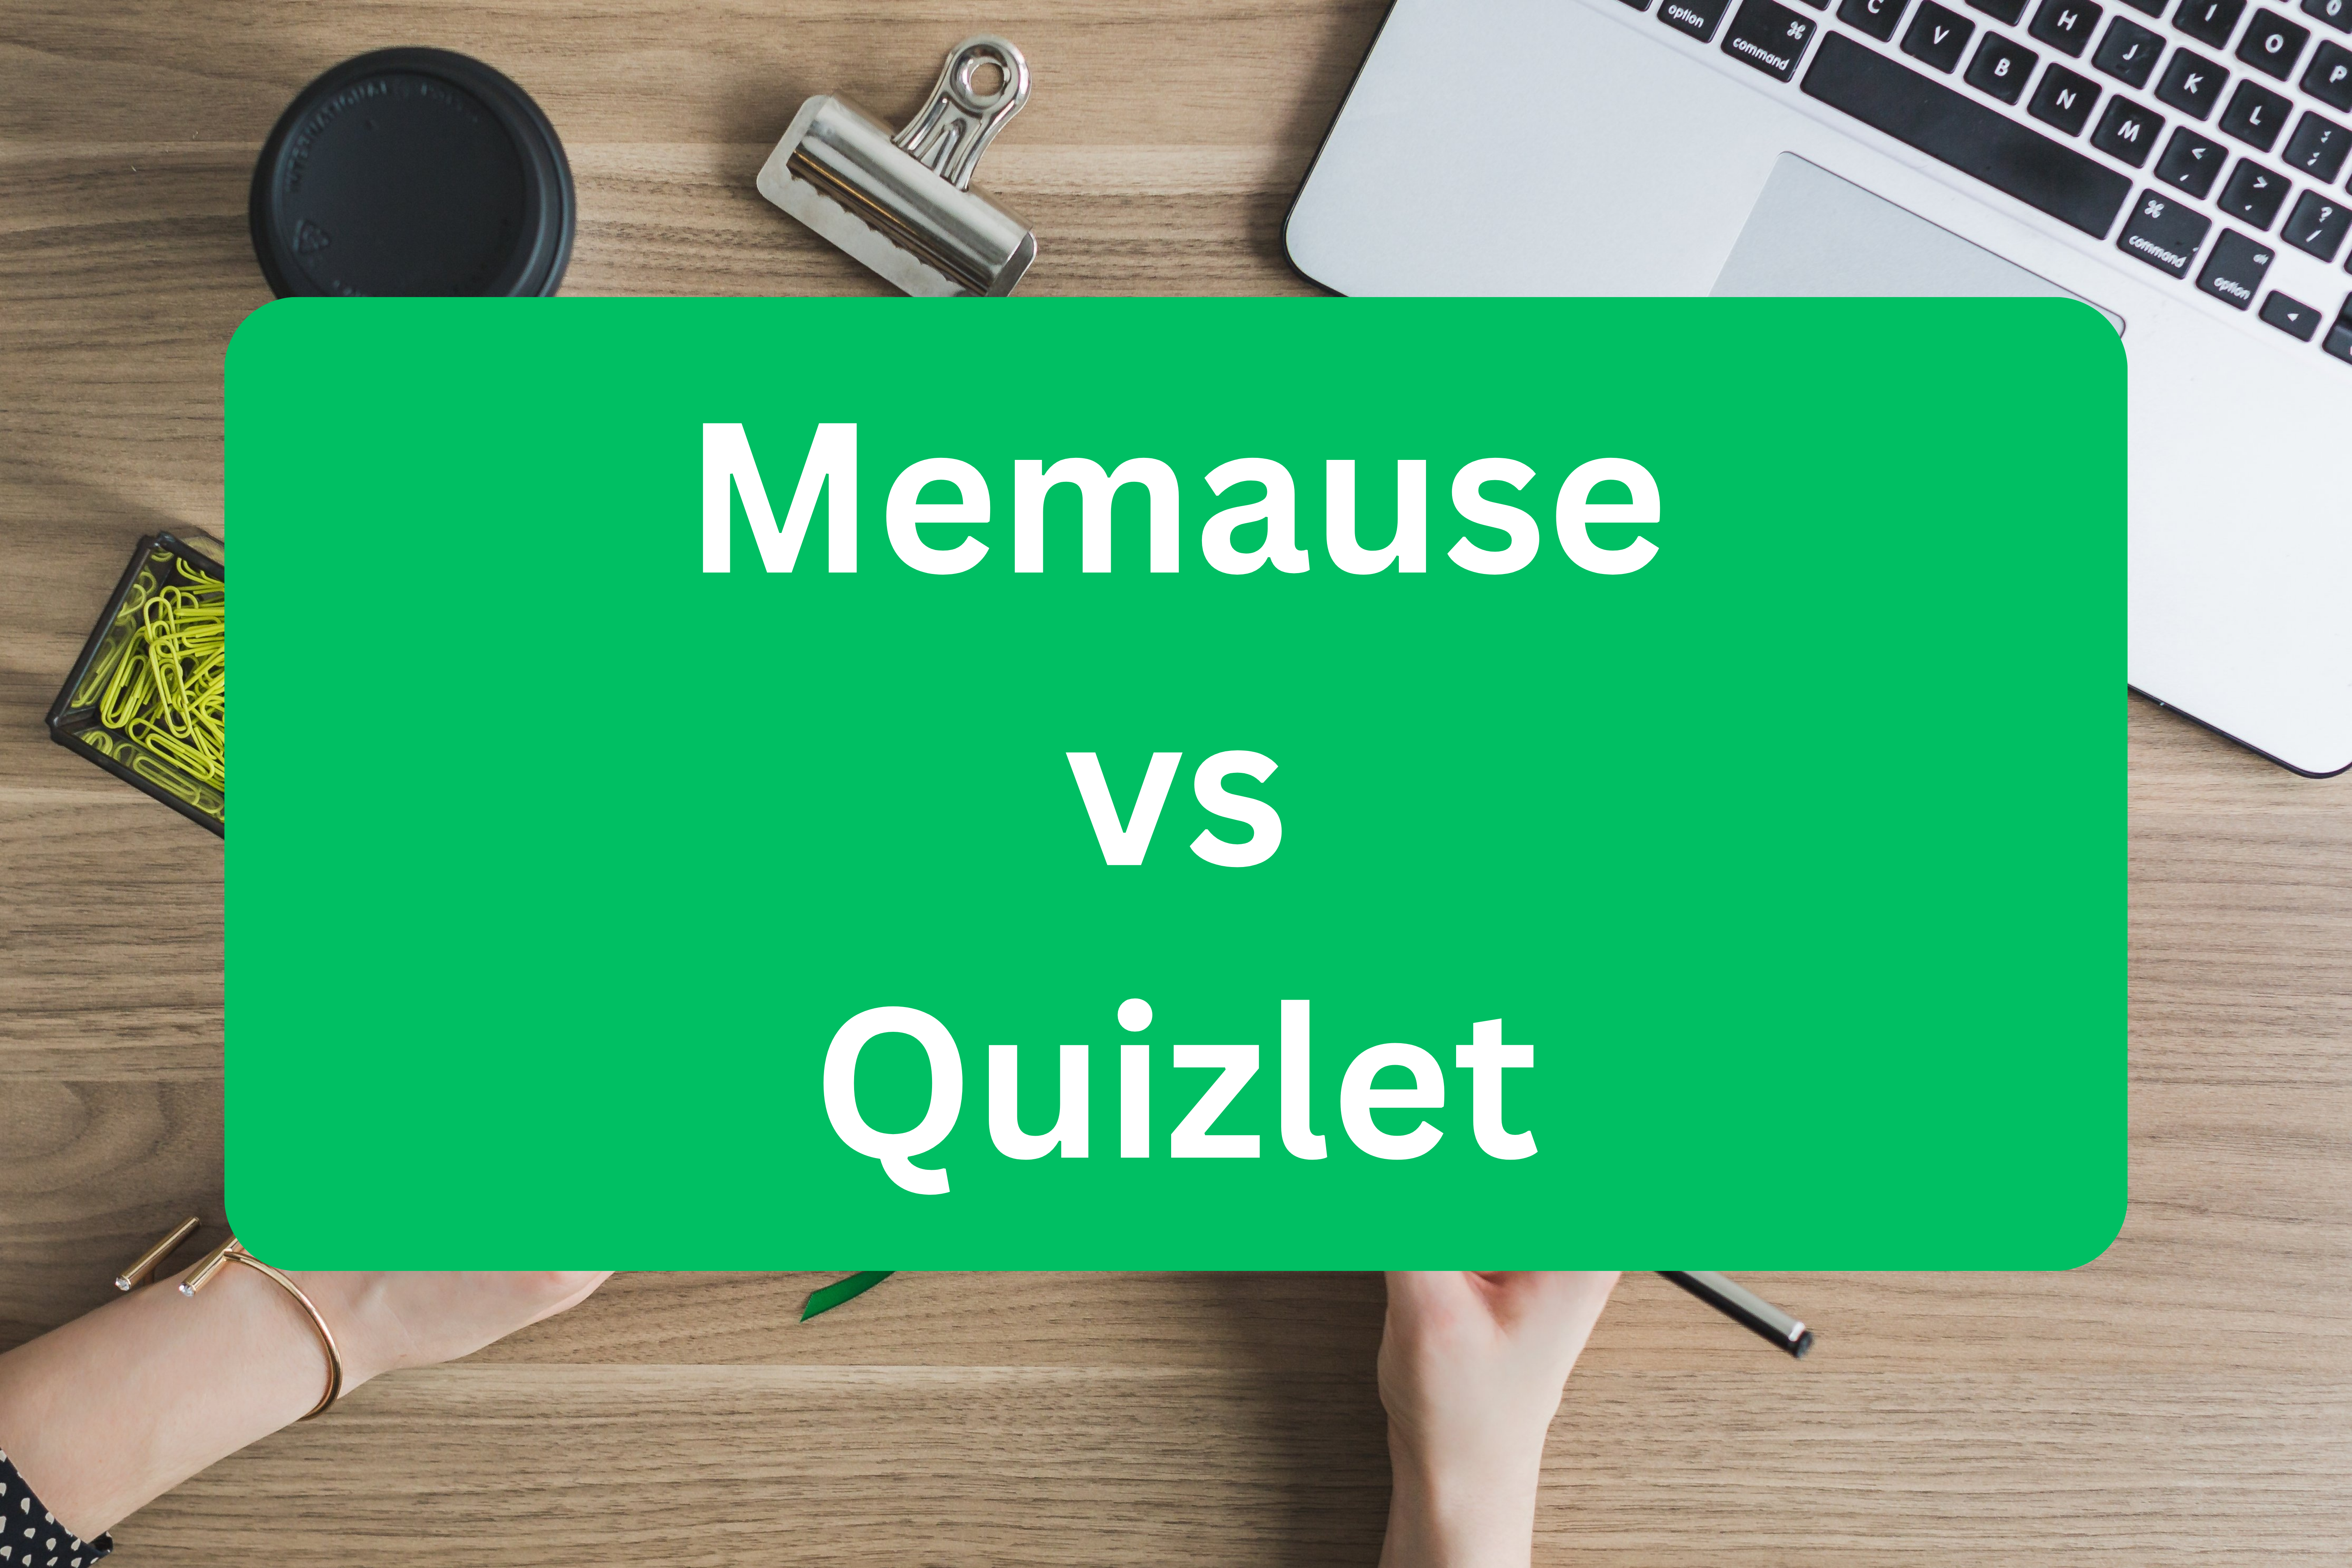 Memause vs Quizlet